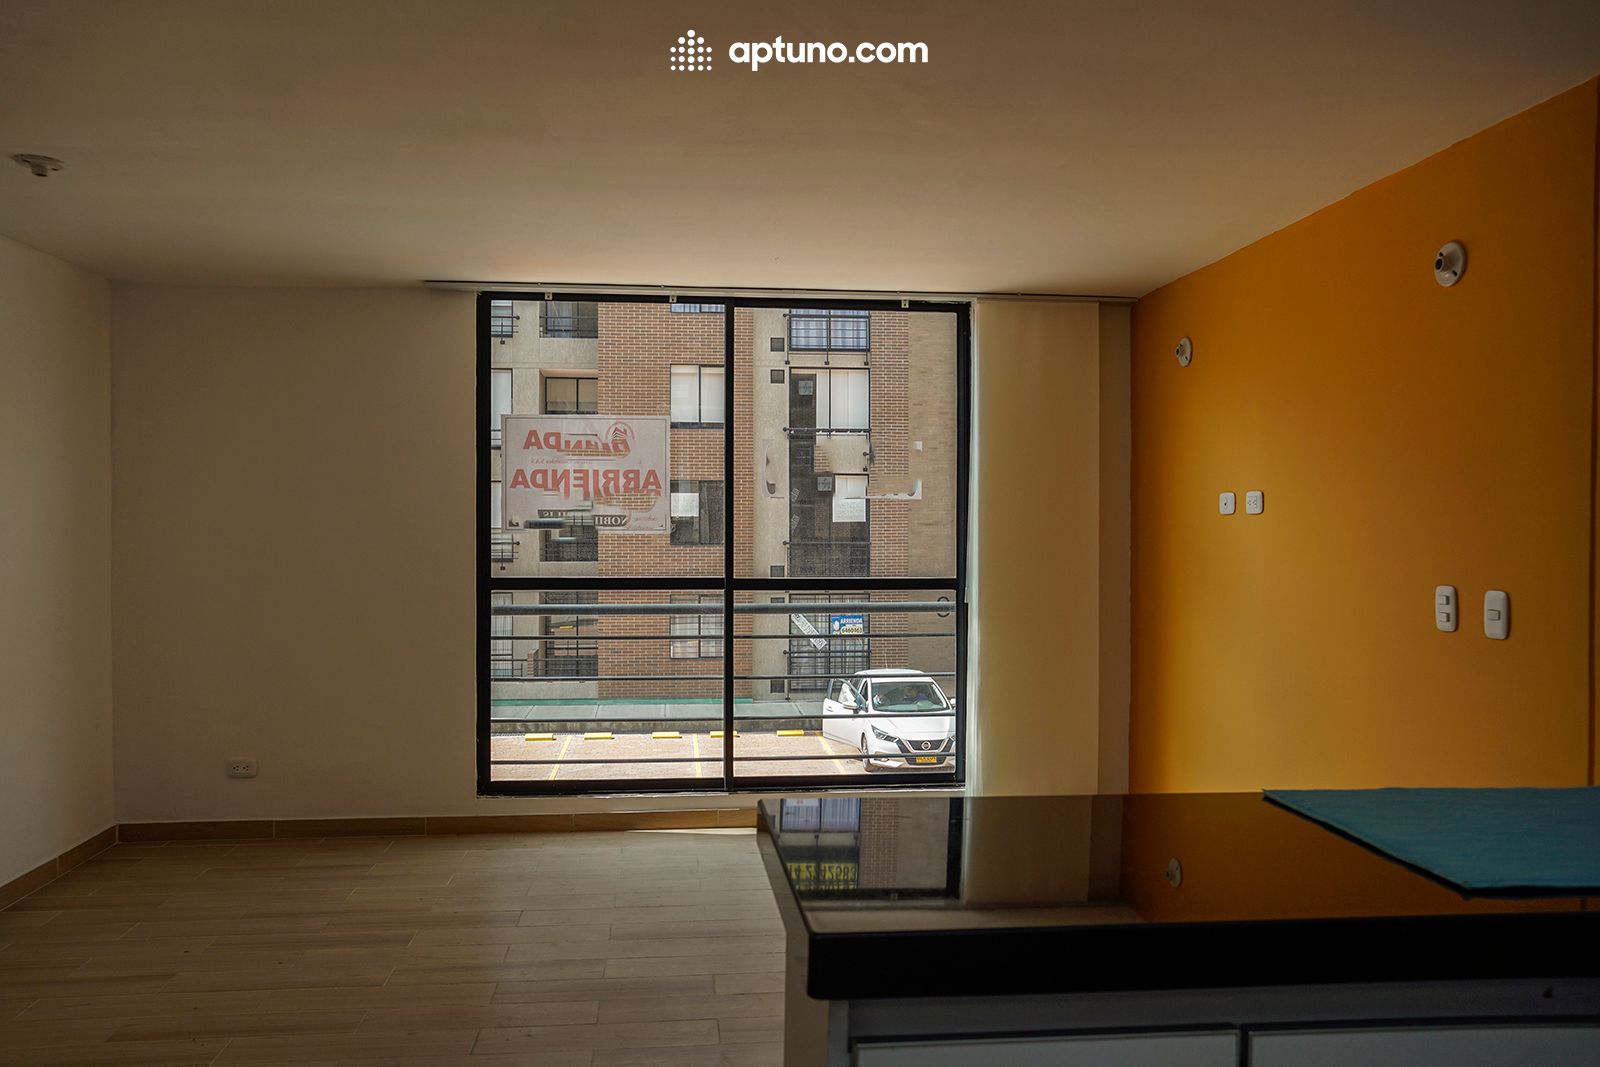 Apartamento en arriendo Zipaquirá 61 m² - $ 1.300.000,00